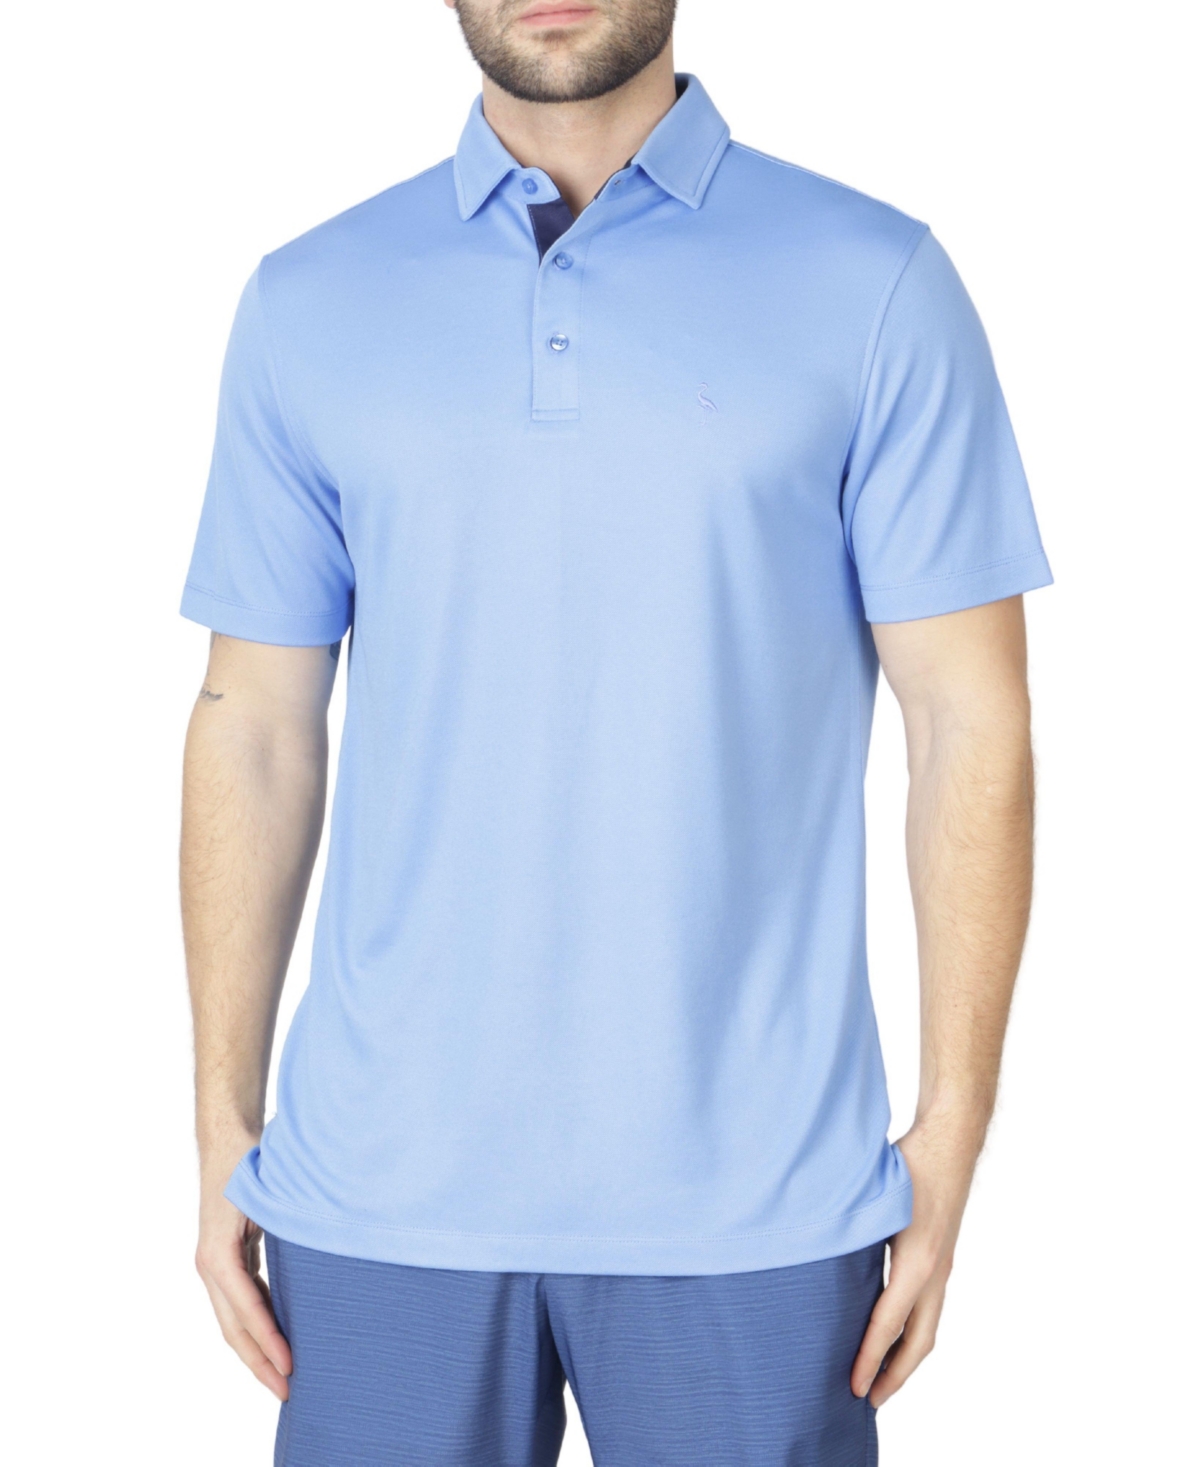 Men's Modal Polo Shirt with Contrast Trim - Sky blue